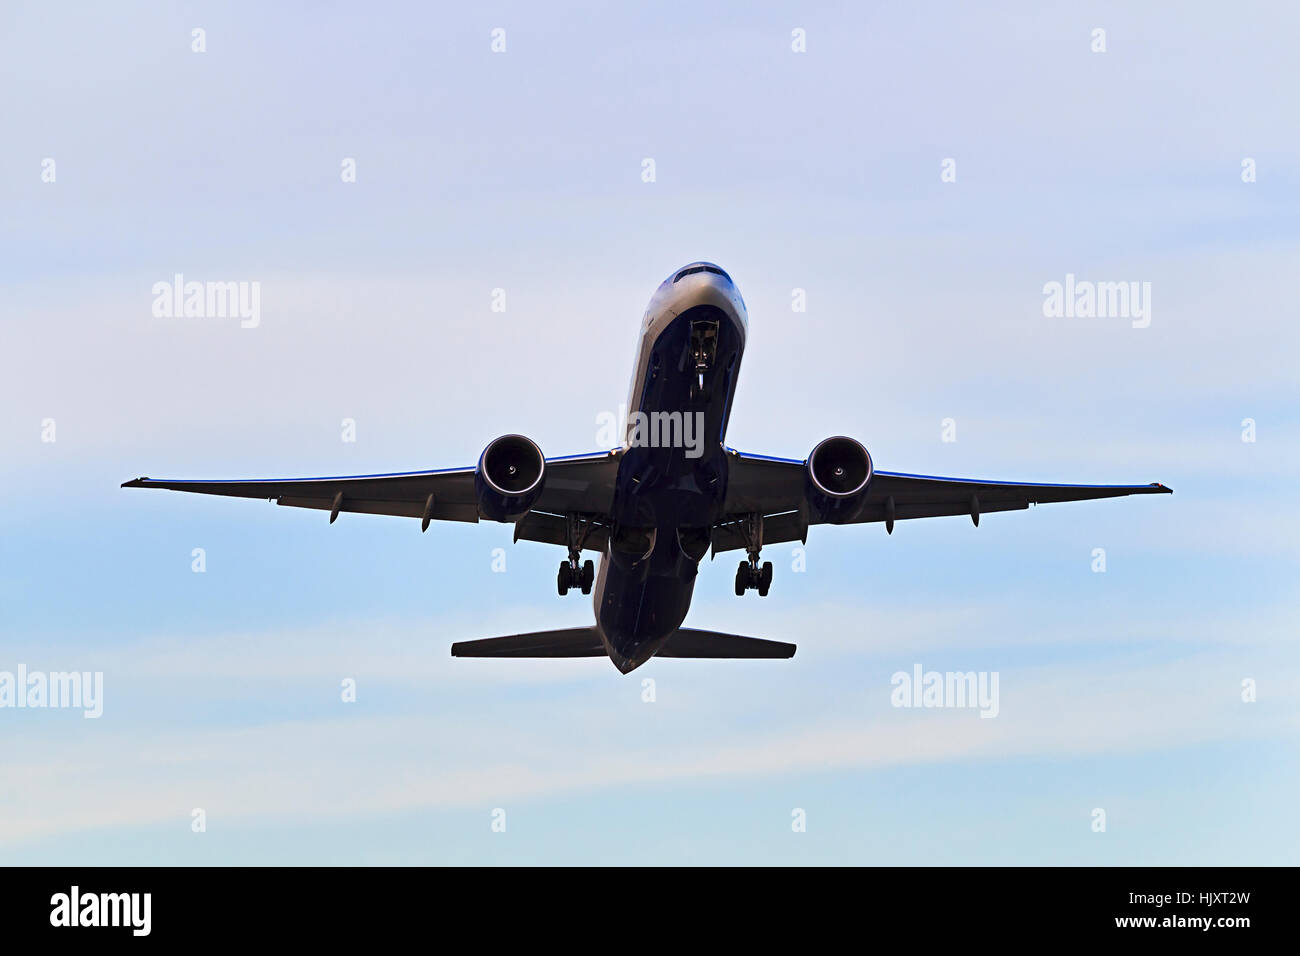 Moderne Jet-Flugzeug abheben vom Flughafen mit Chassis noch gegen hellen Himmel mit seinem unteren Teil in der Luft. Stockfoto